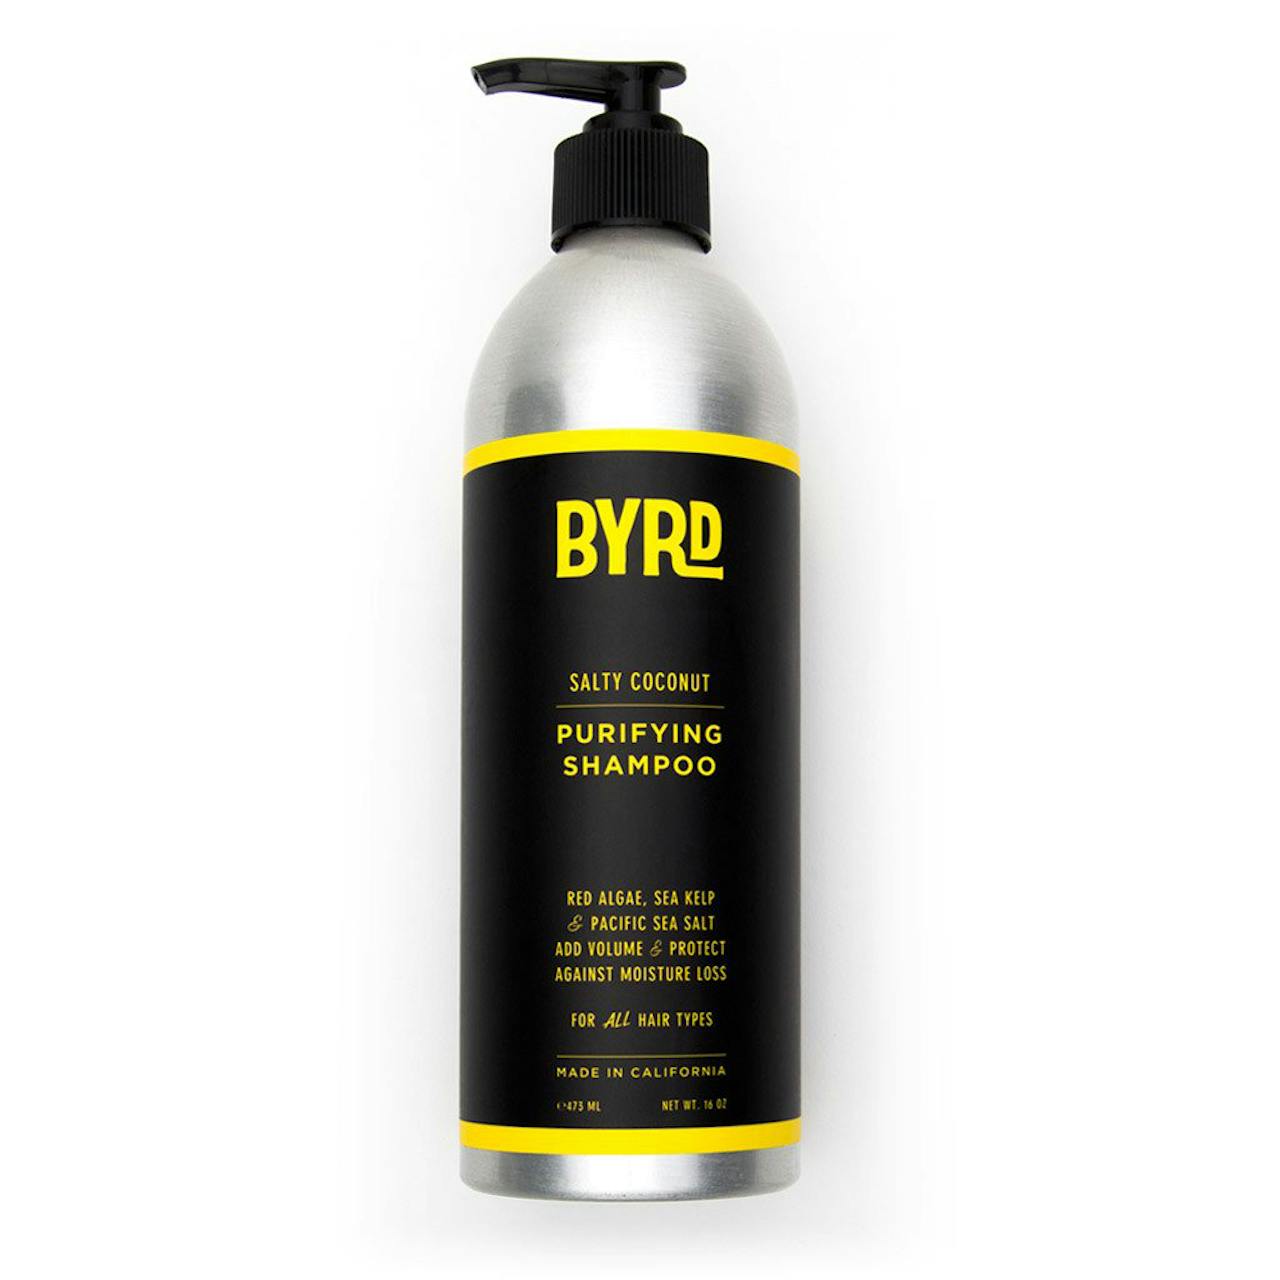 Byrd Purifying Shampoo